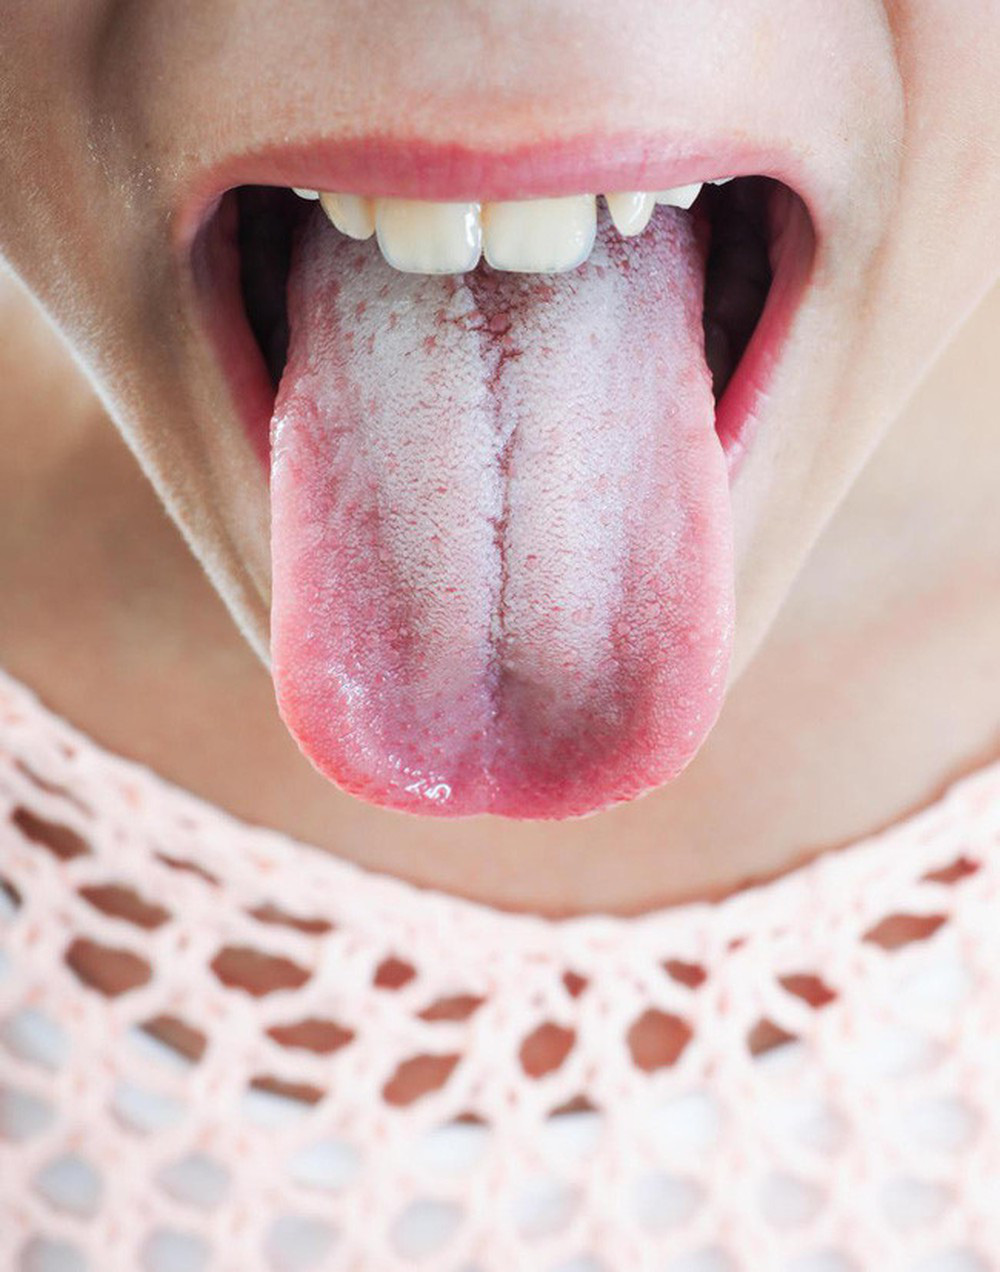 Lưỡi có lớp phủ màu trắng hoặc đốm trắng - dấu hiệu của bệnh Leukoplakia.